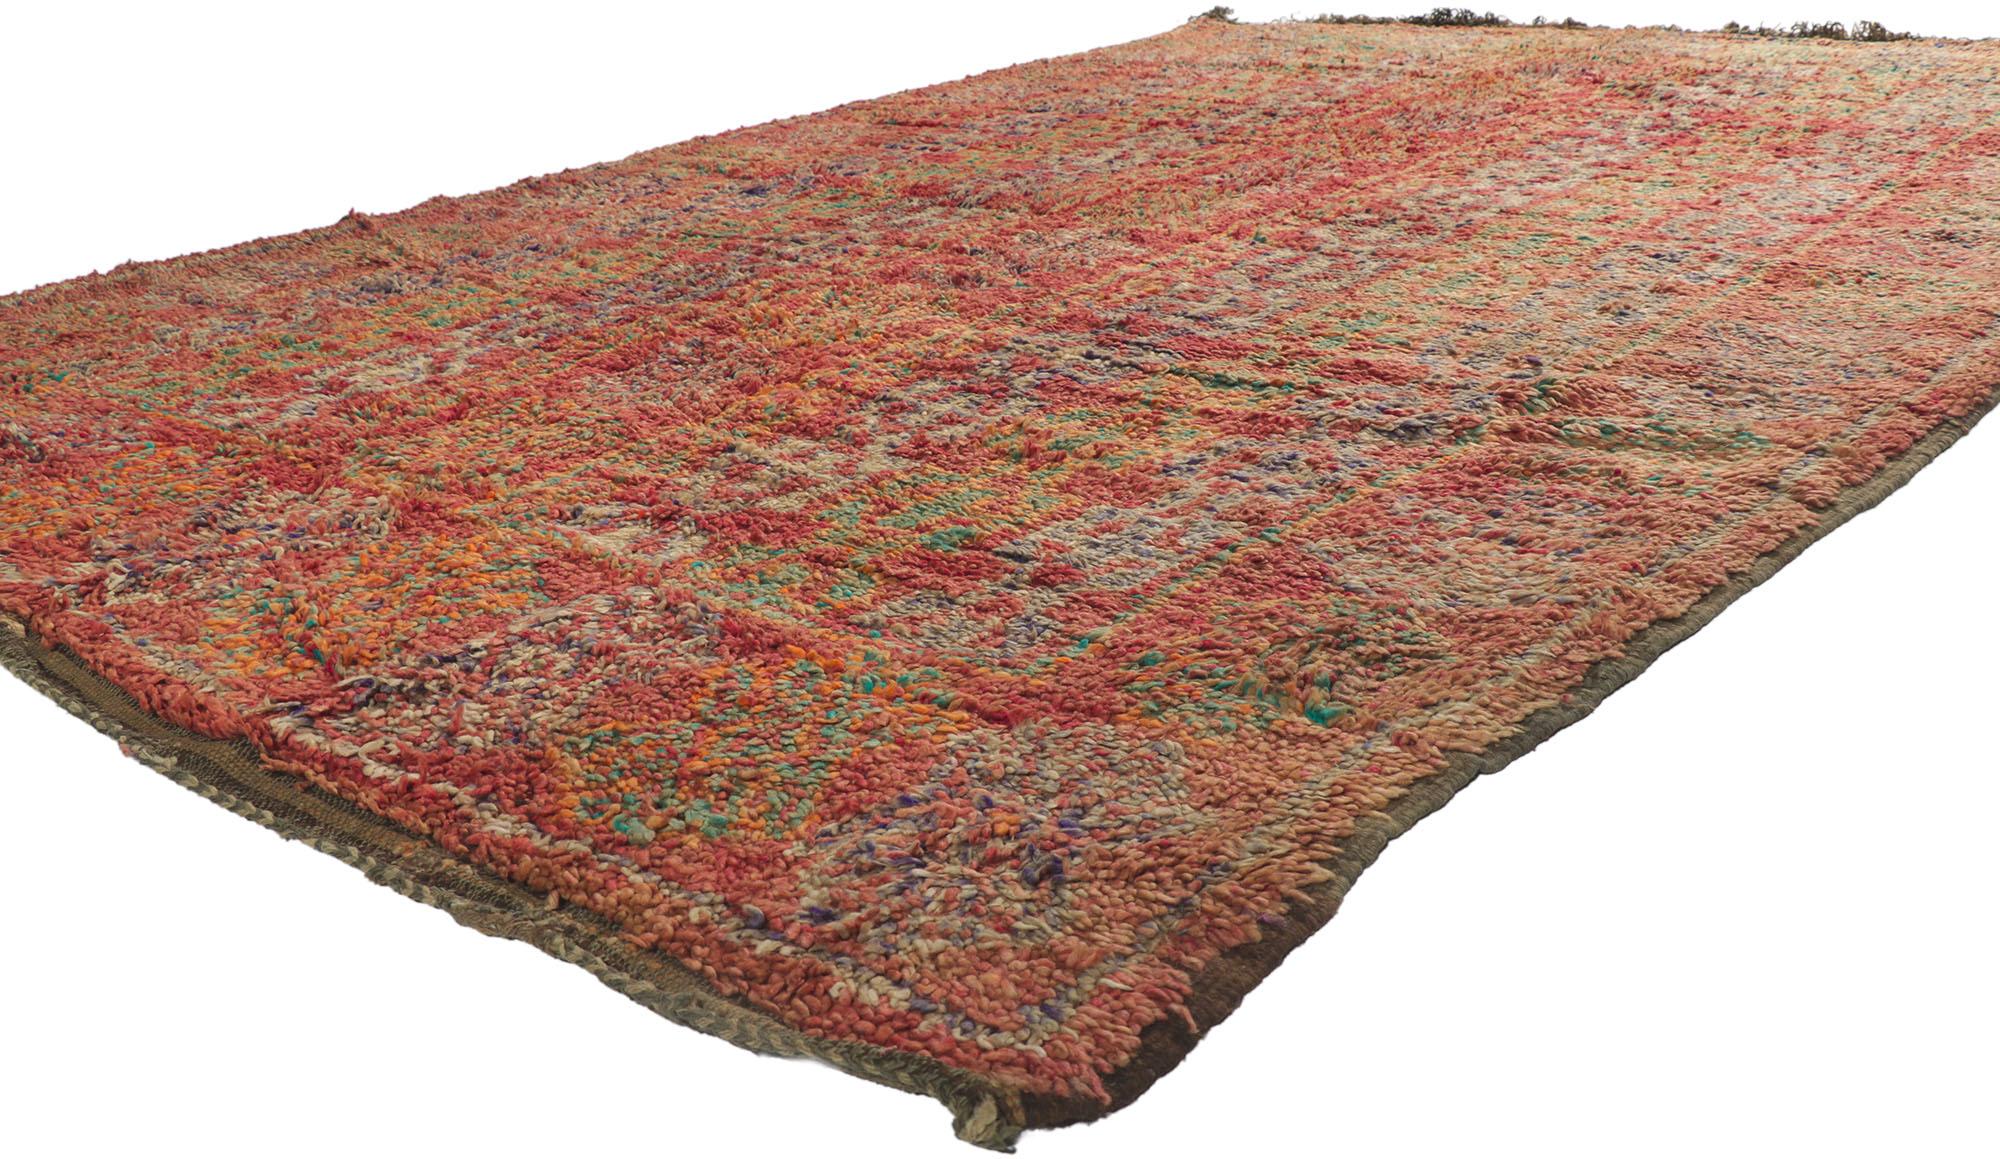 21202 Tapis marocain vintage Beni MGuild, 07'01 x 10'09.
Le charme nomade rencontre le style du sud-ouest dans ce tapis marocain vintage en laine noué à la main. Les éléments tribaux distinctifs et les couleurs vives des tons de terre tissés dans